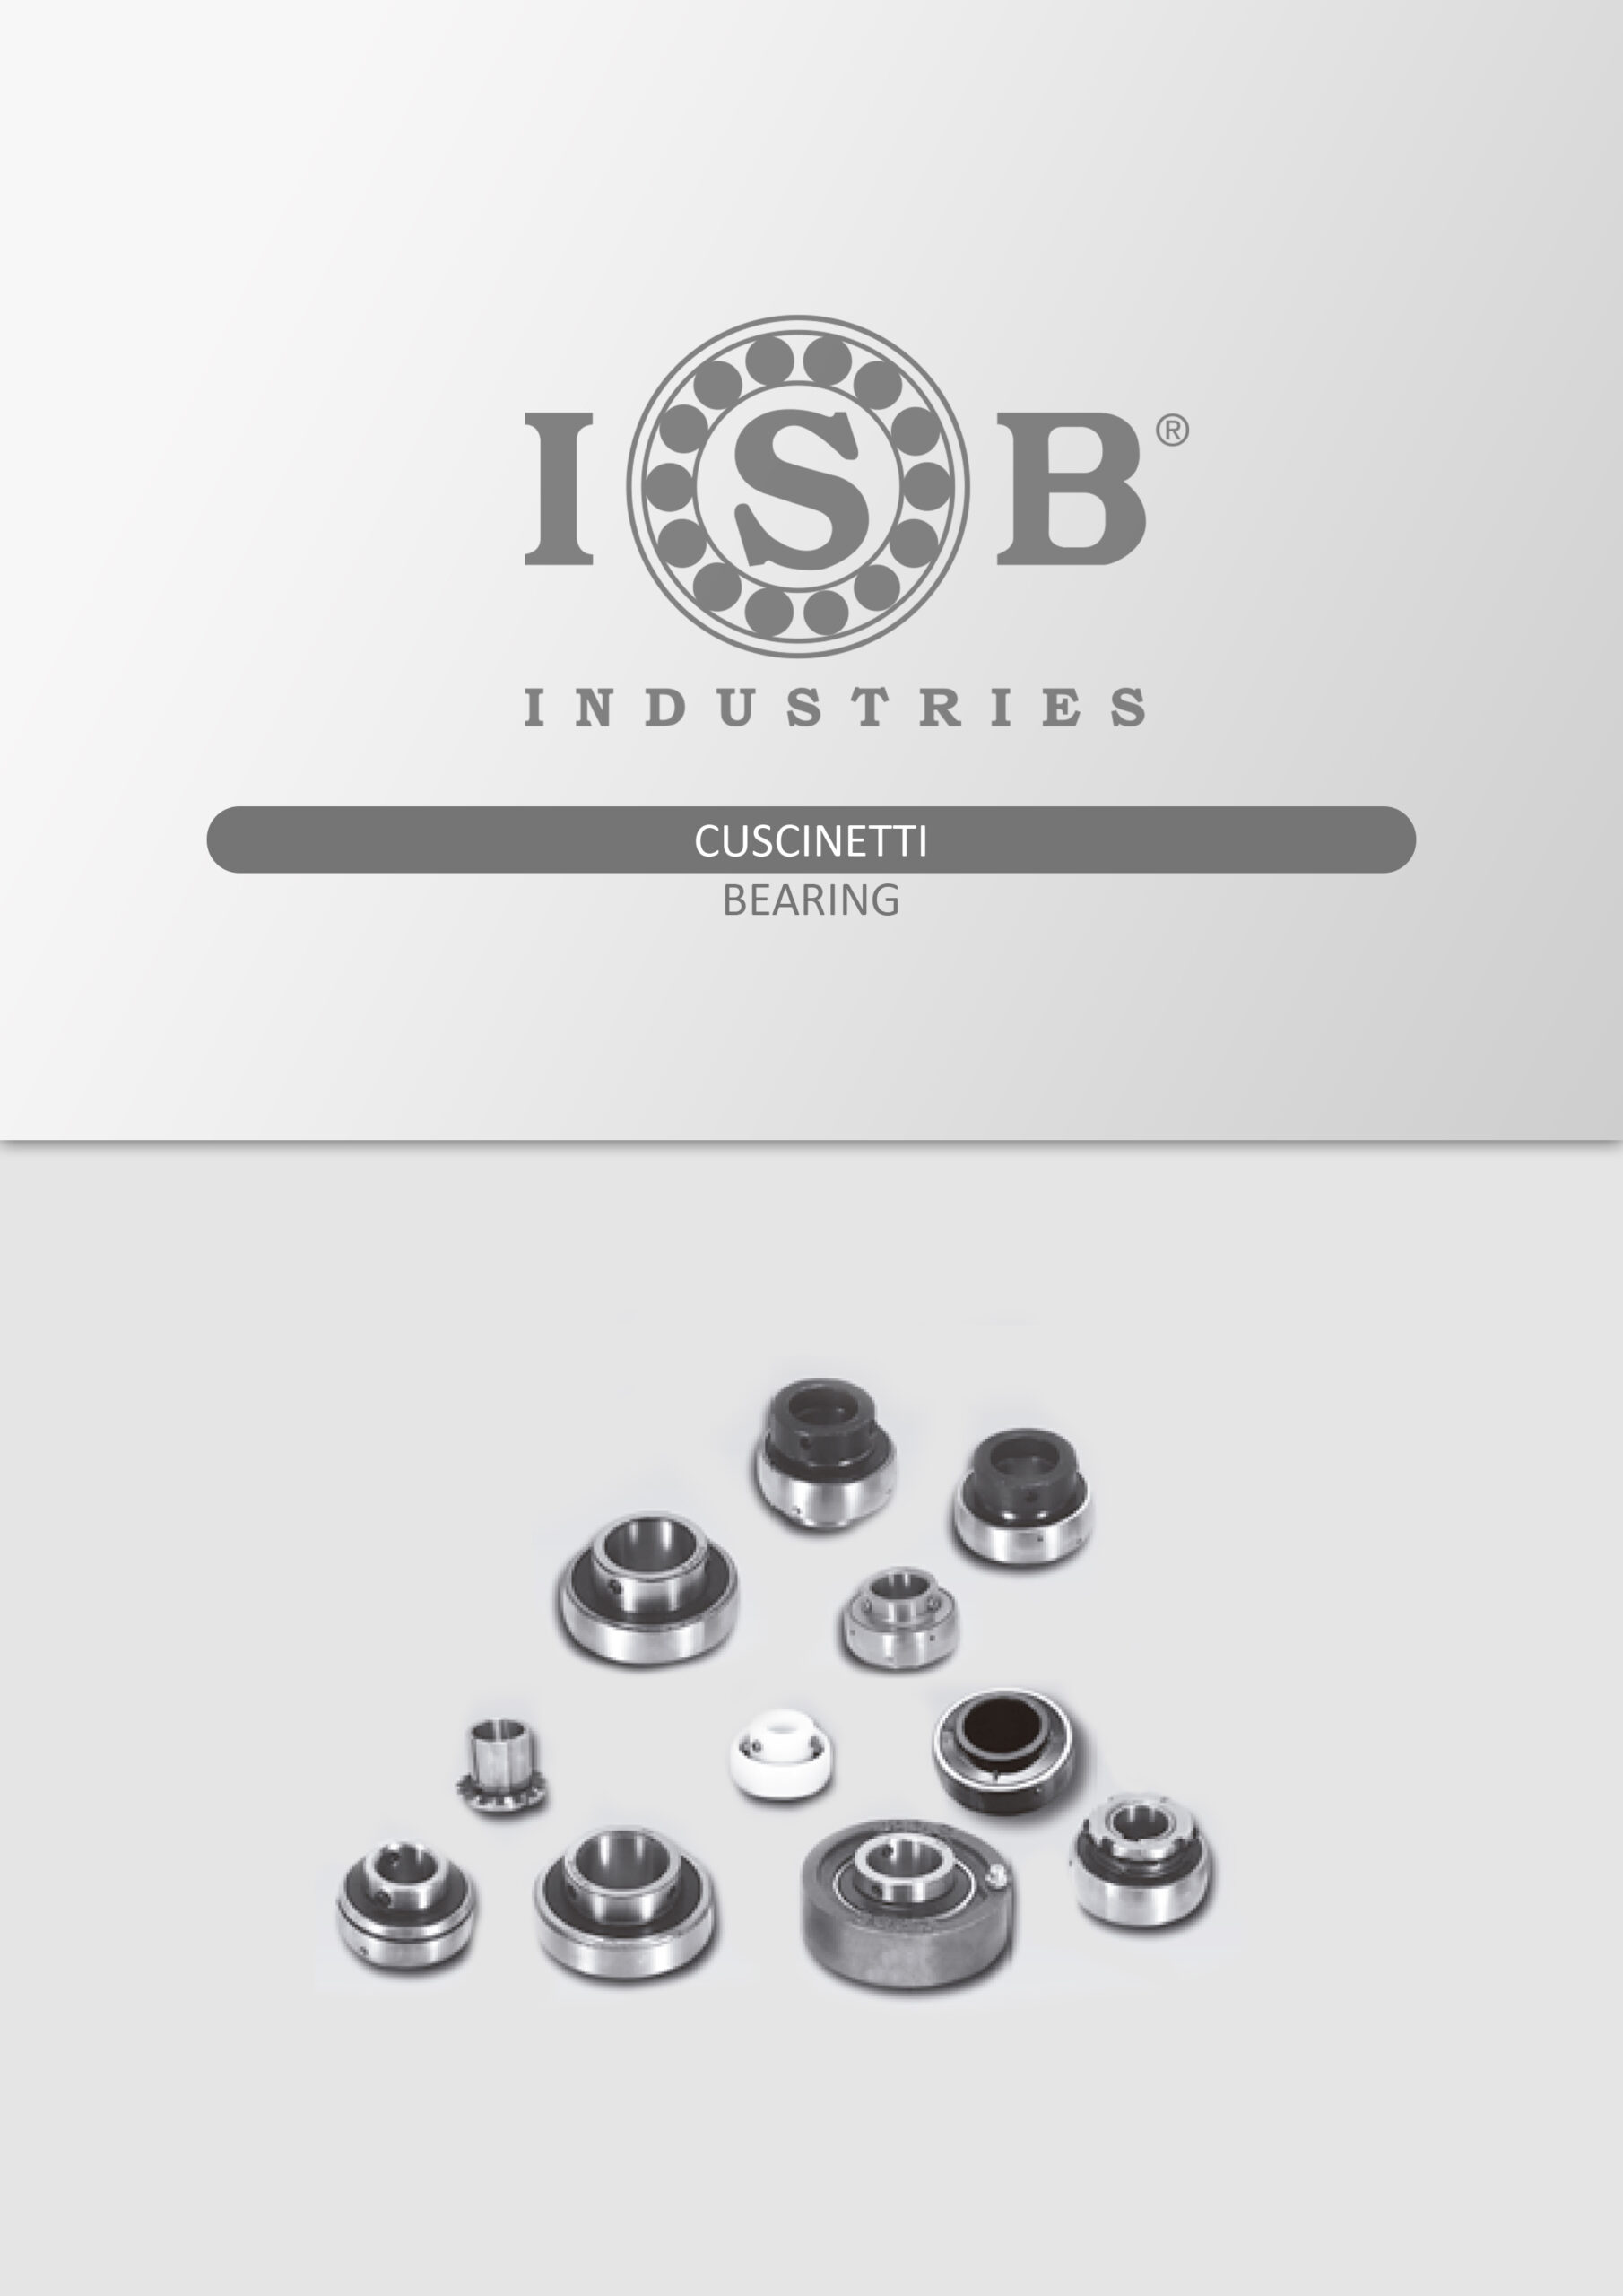 Rodamientos-para-soportes-ISB-scaled.jpg